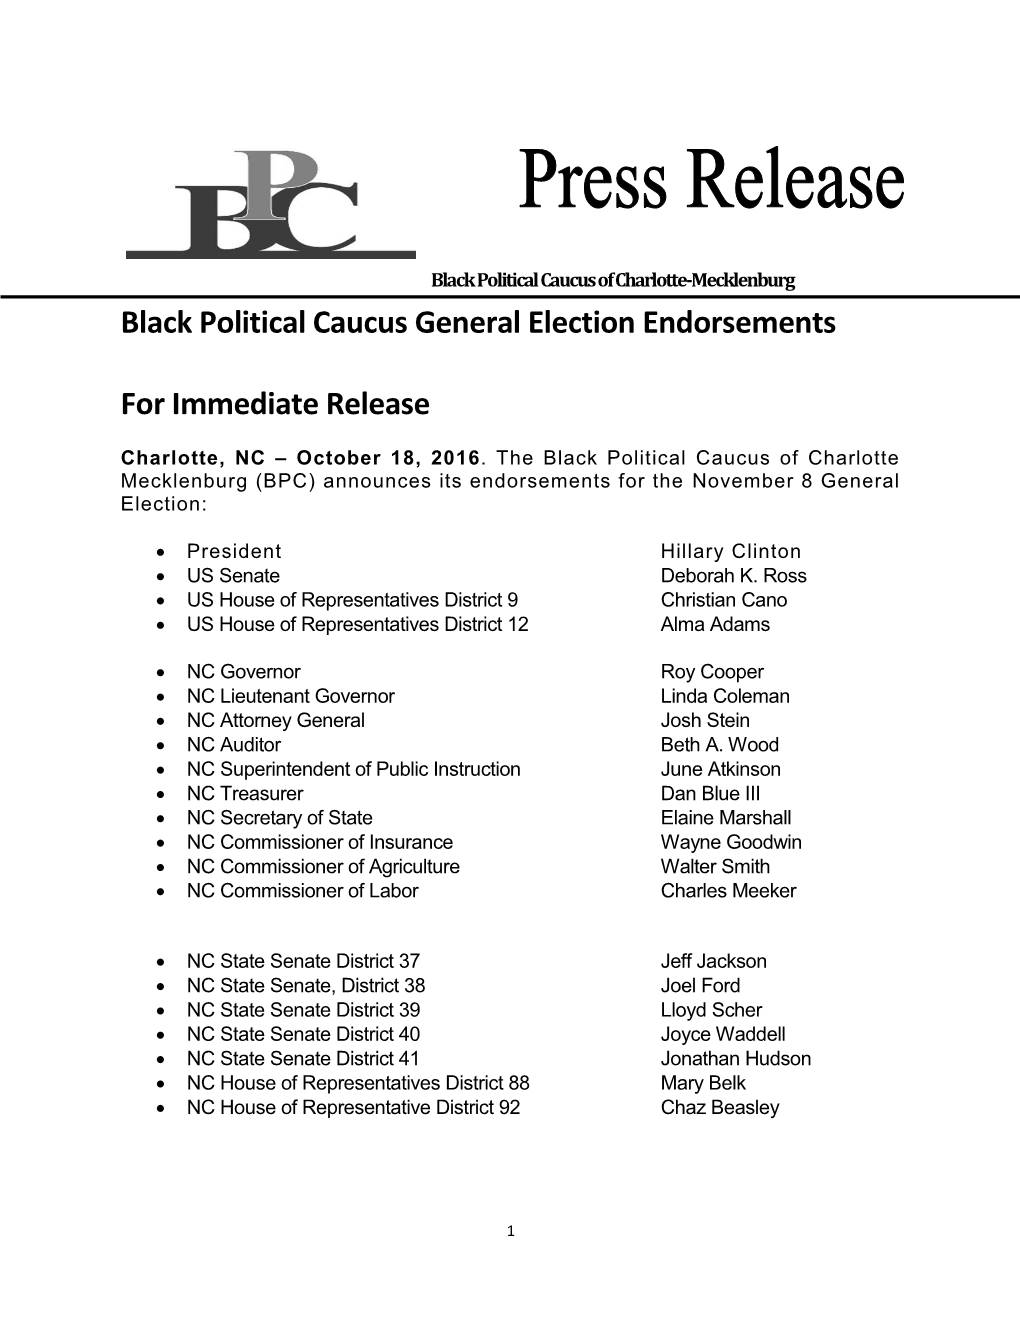 Black Political Caucus General Election Endorsements For